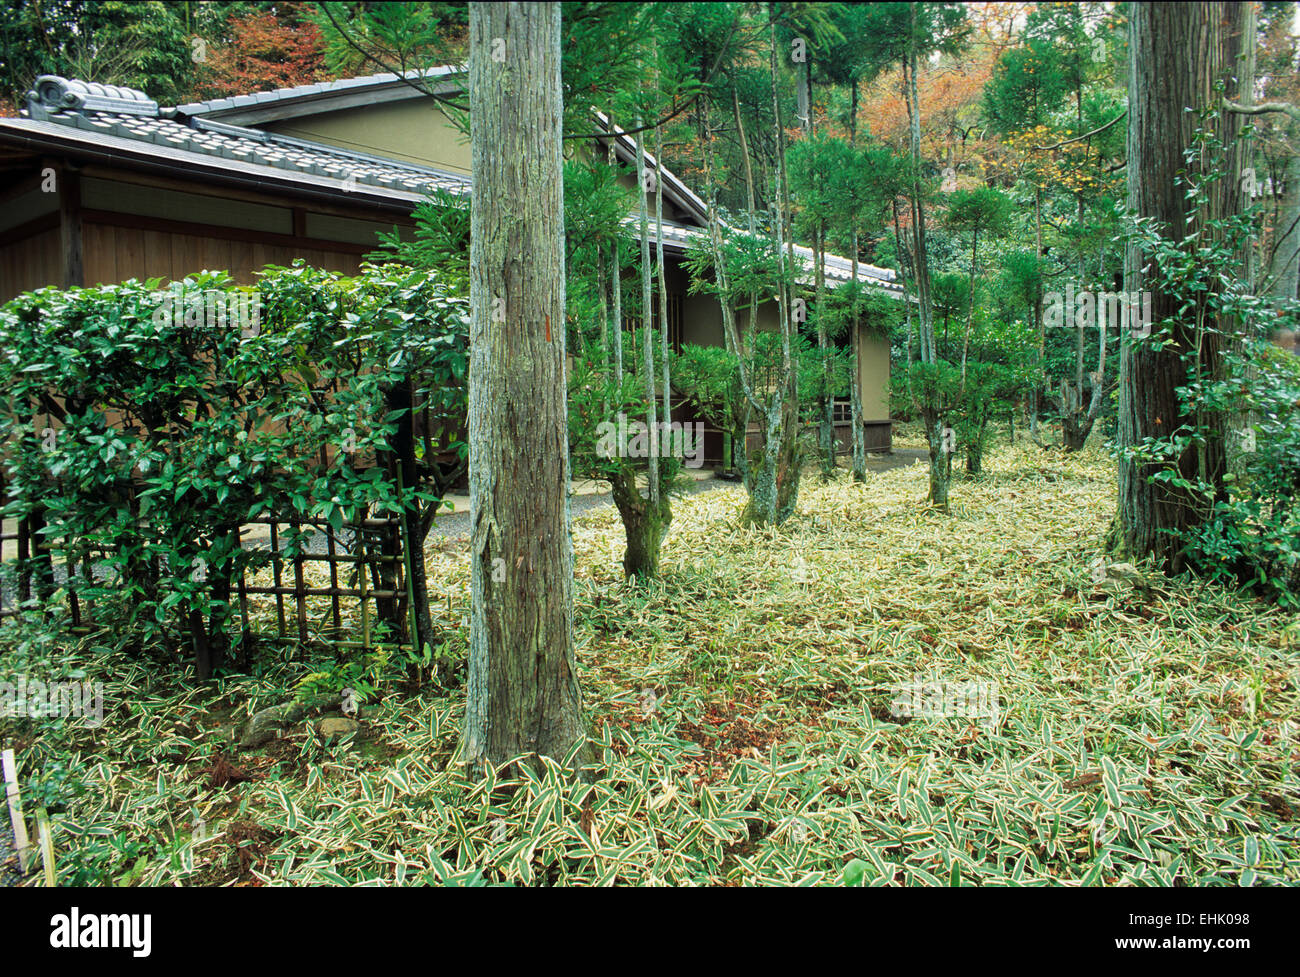 Der Stadt Kyoto ist ein einzigartiges Reservat für alte Zen-Gärten und Schreine, die mehr als neunhundert Jahre alt sind. Stockfoto